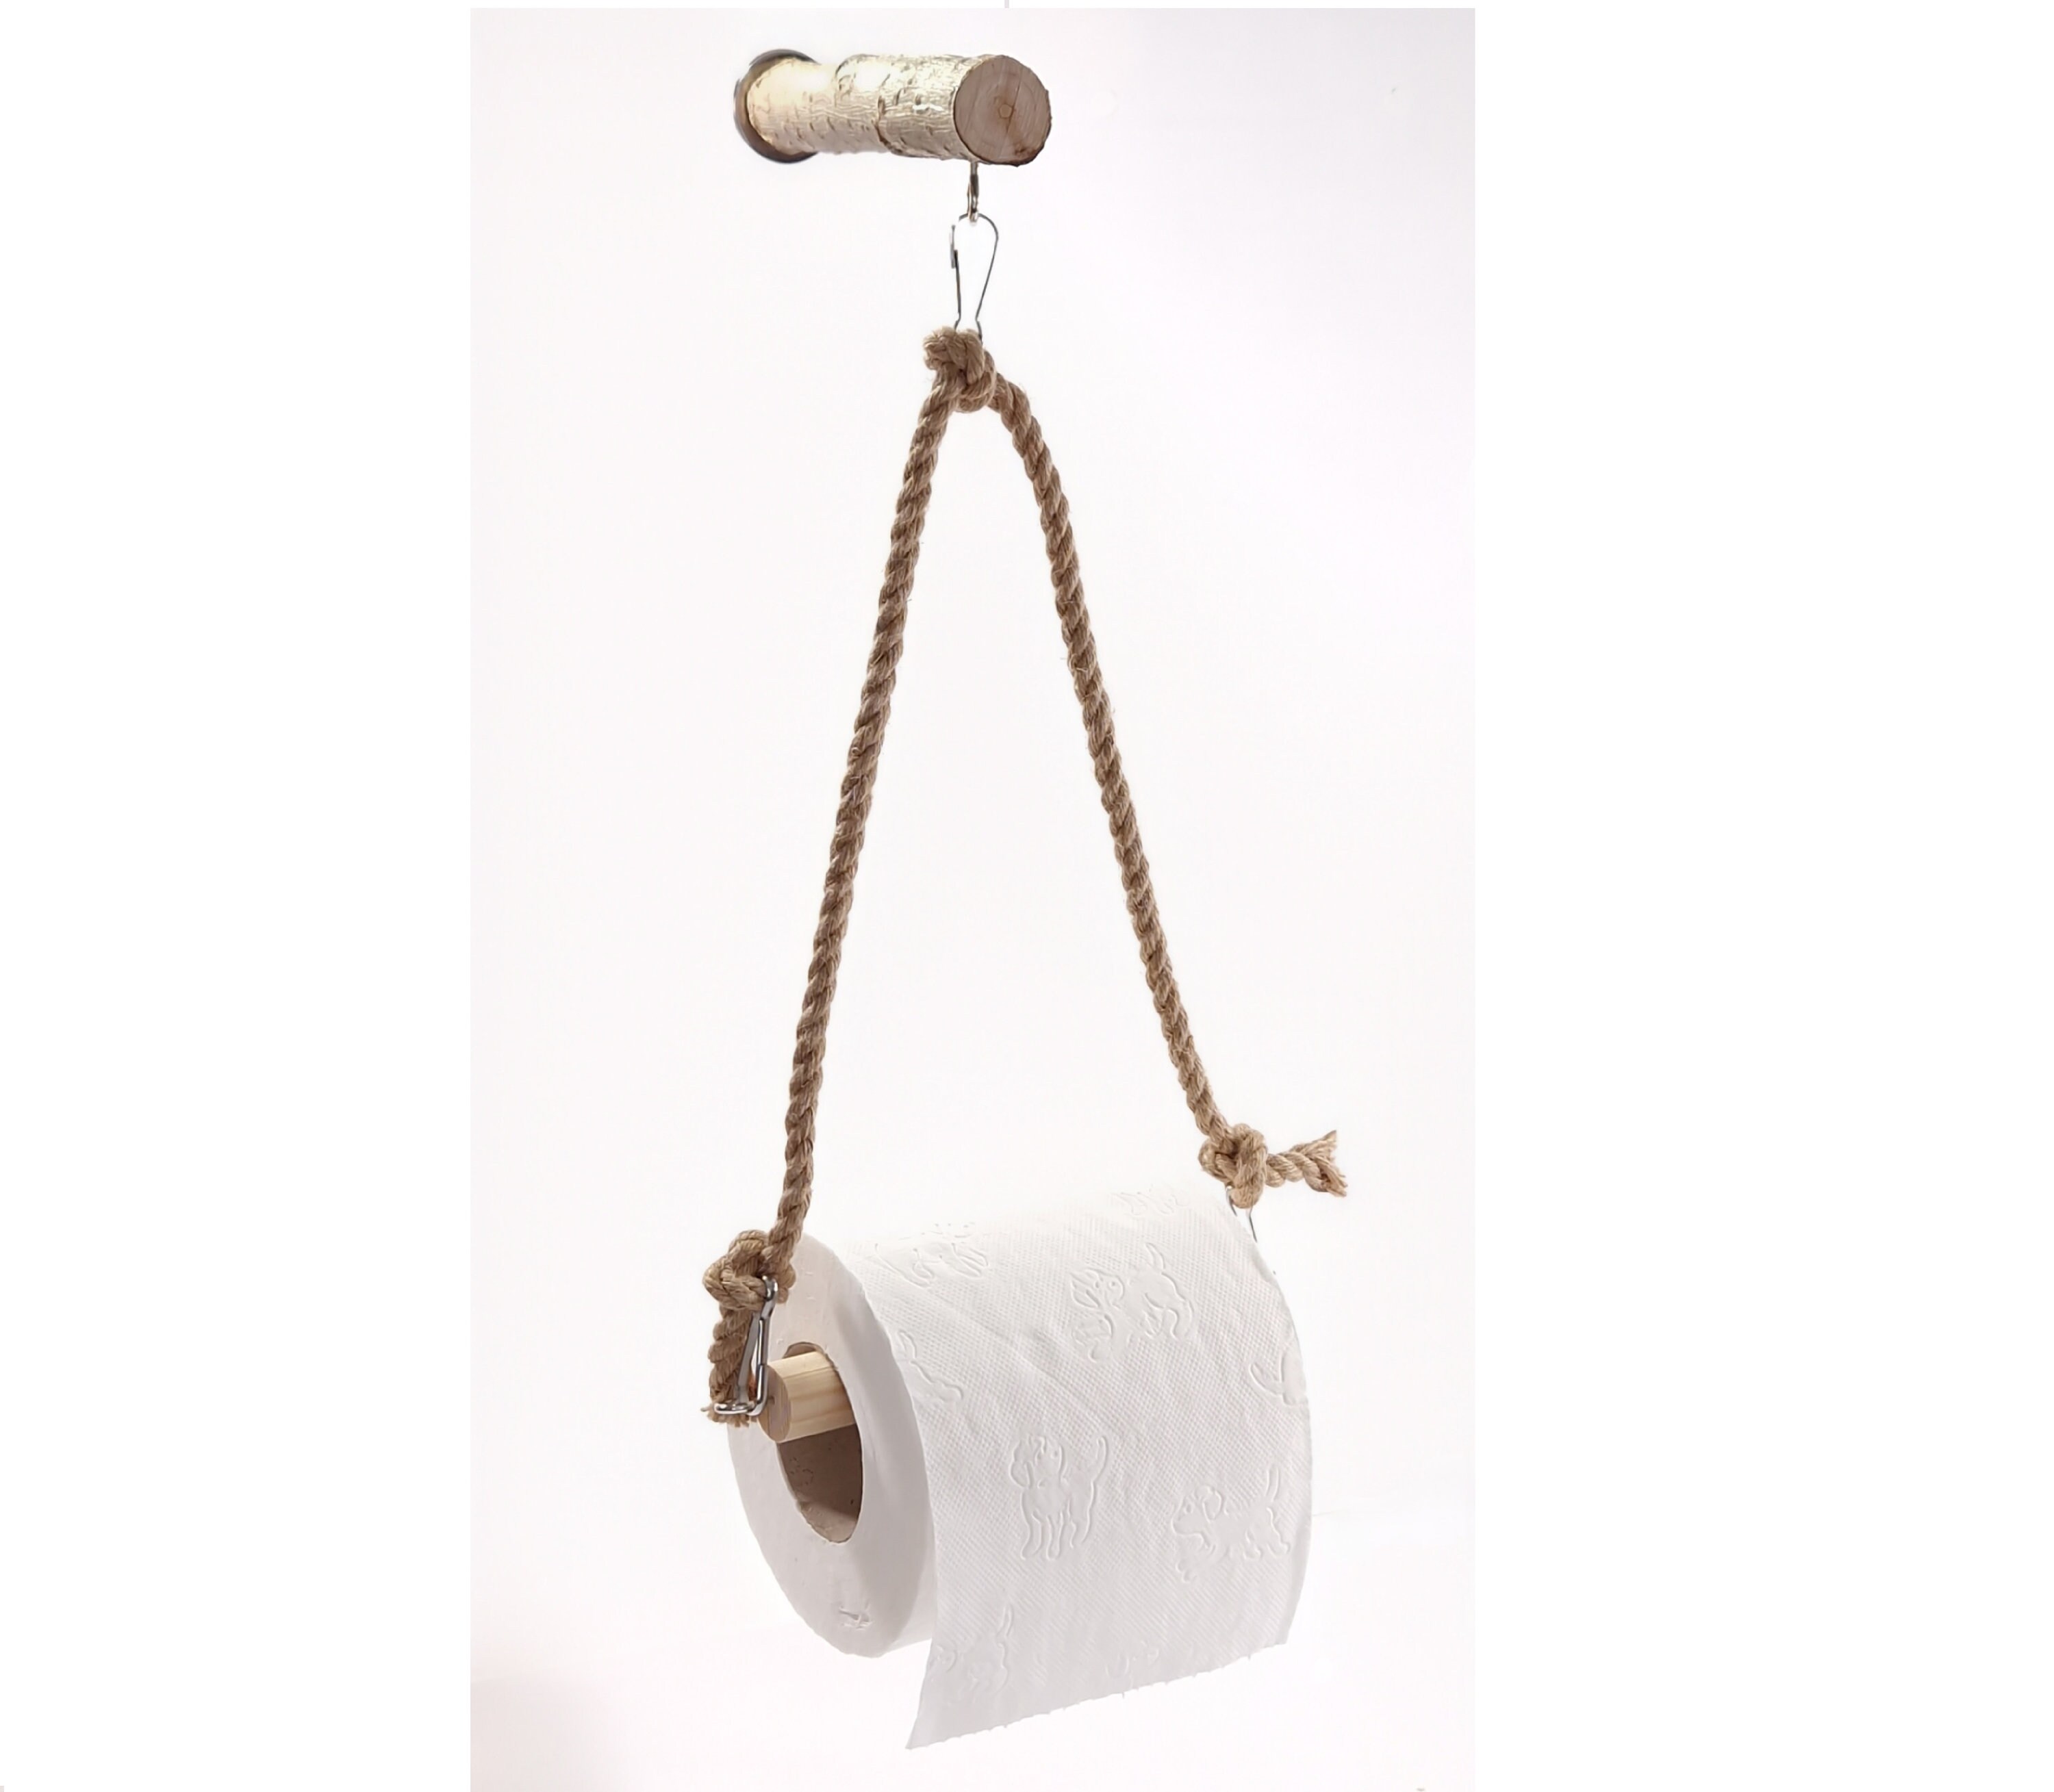 Serpentine Toilet Paper Holder